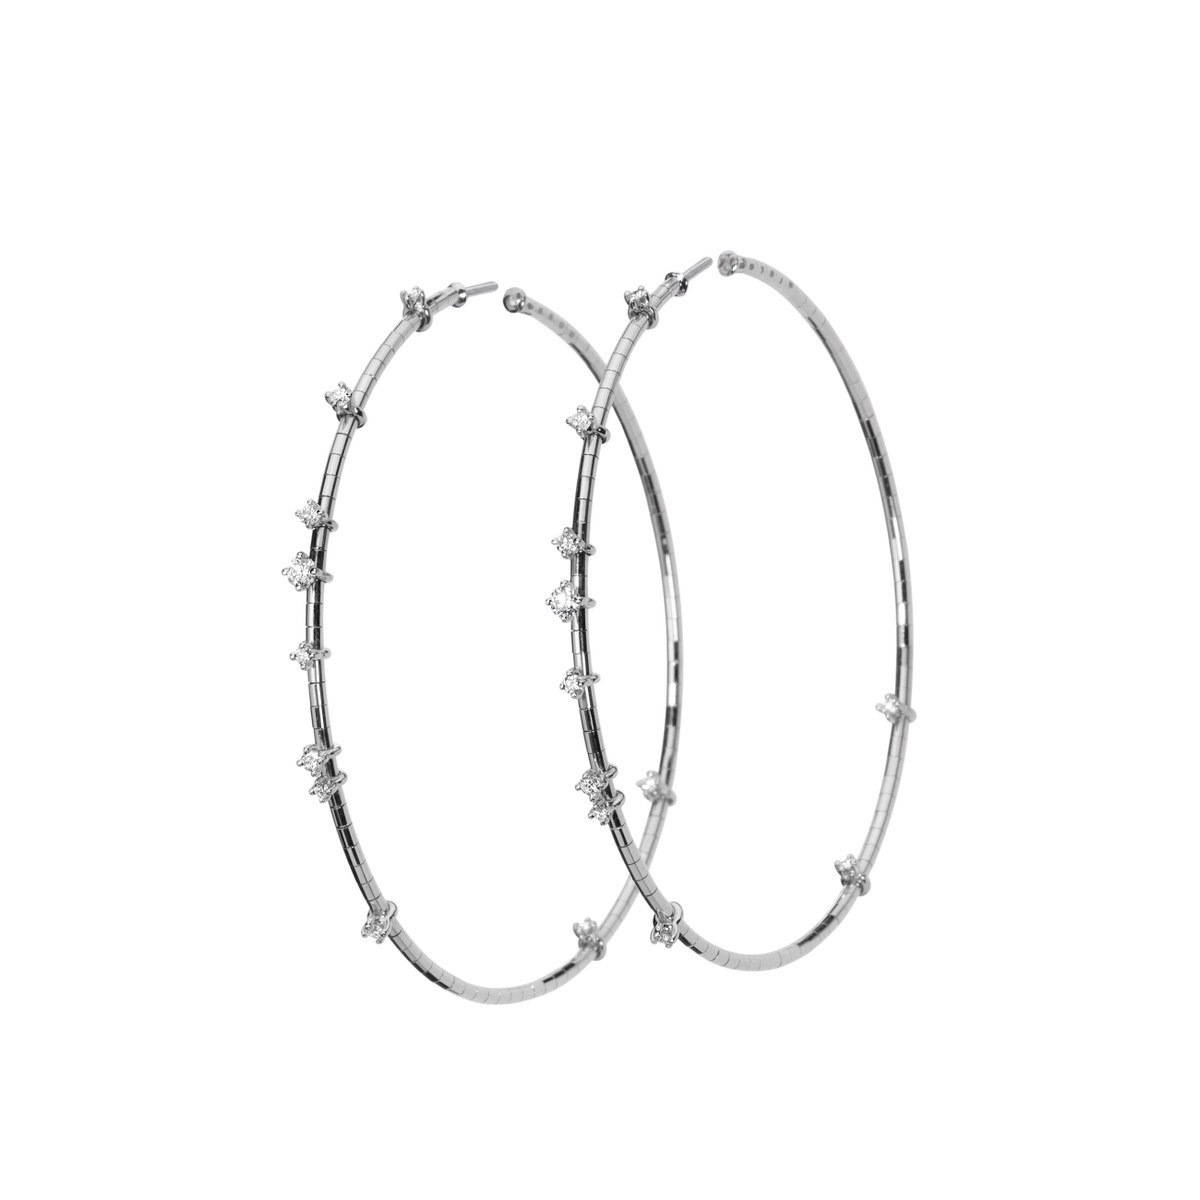 Mattia Cielo 18K White Gold Diamond Hoop Earrings-53164 Product Image